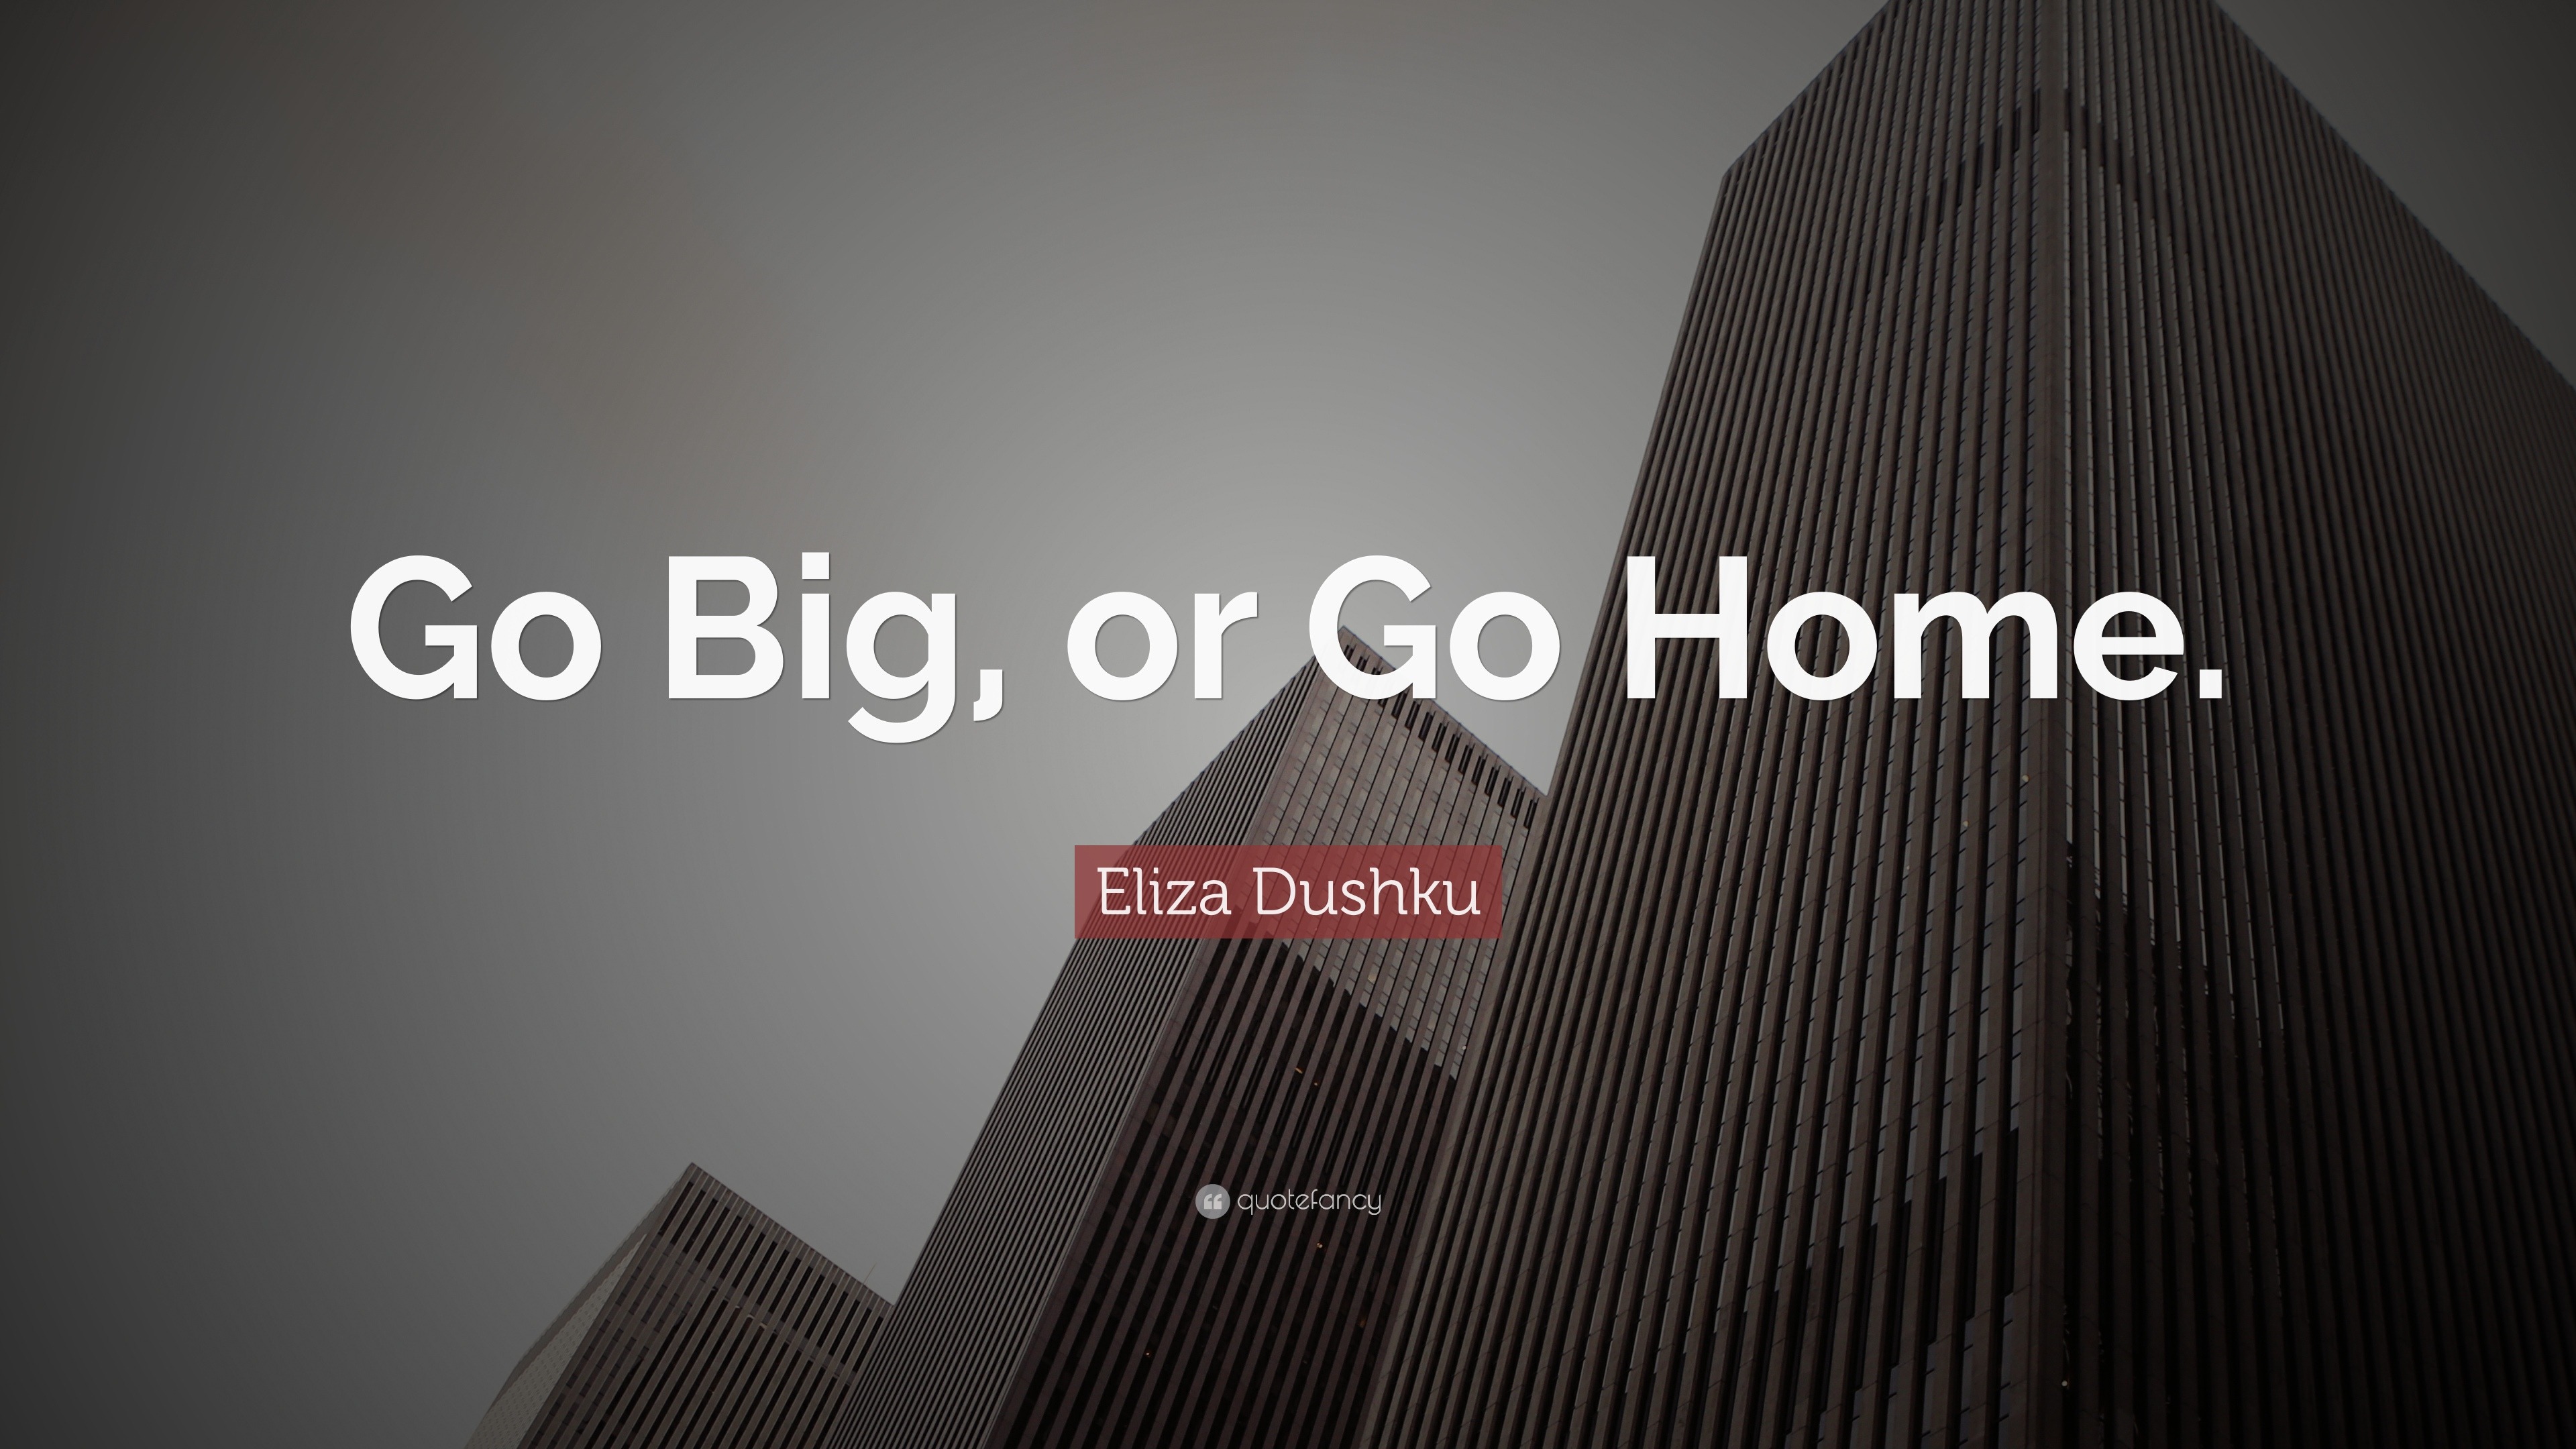 Go Big Or Go Home Origin Eliza Dushku Quote: “Go Big, or Go Home.”